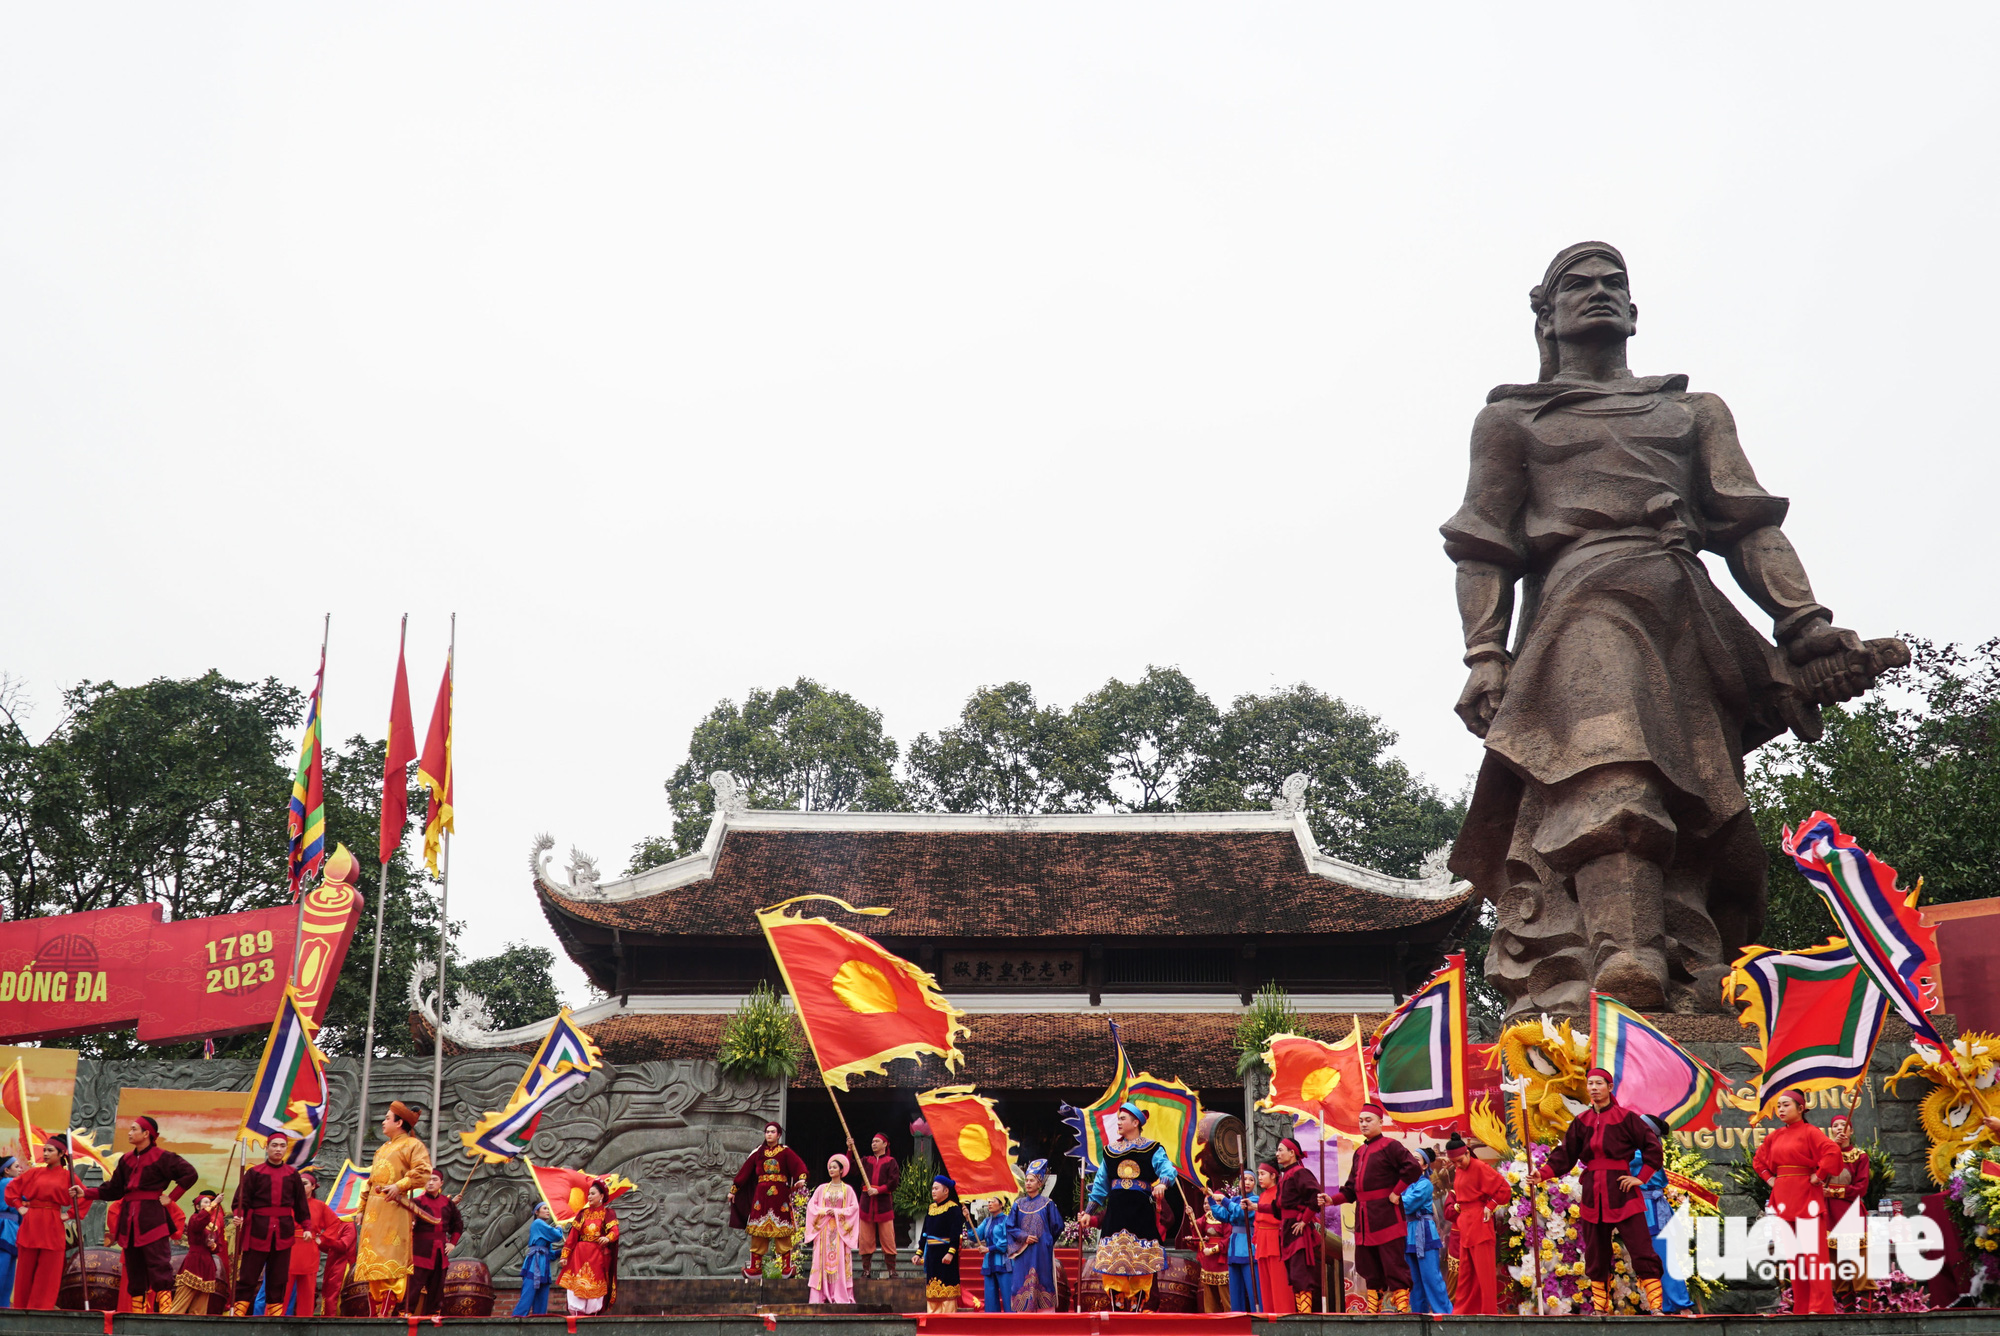 Tái hiện hình ảnh Vua Quang Trung trong lễ hội Đống Đa - Ảnh 3.